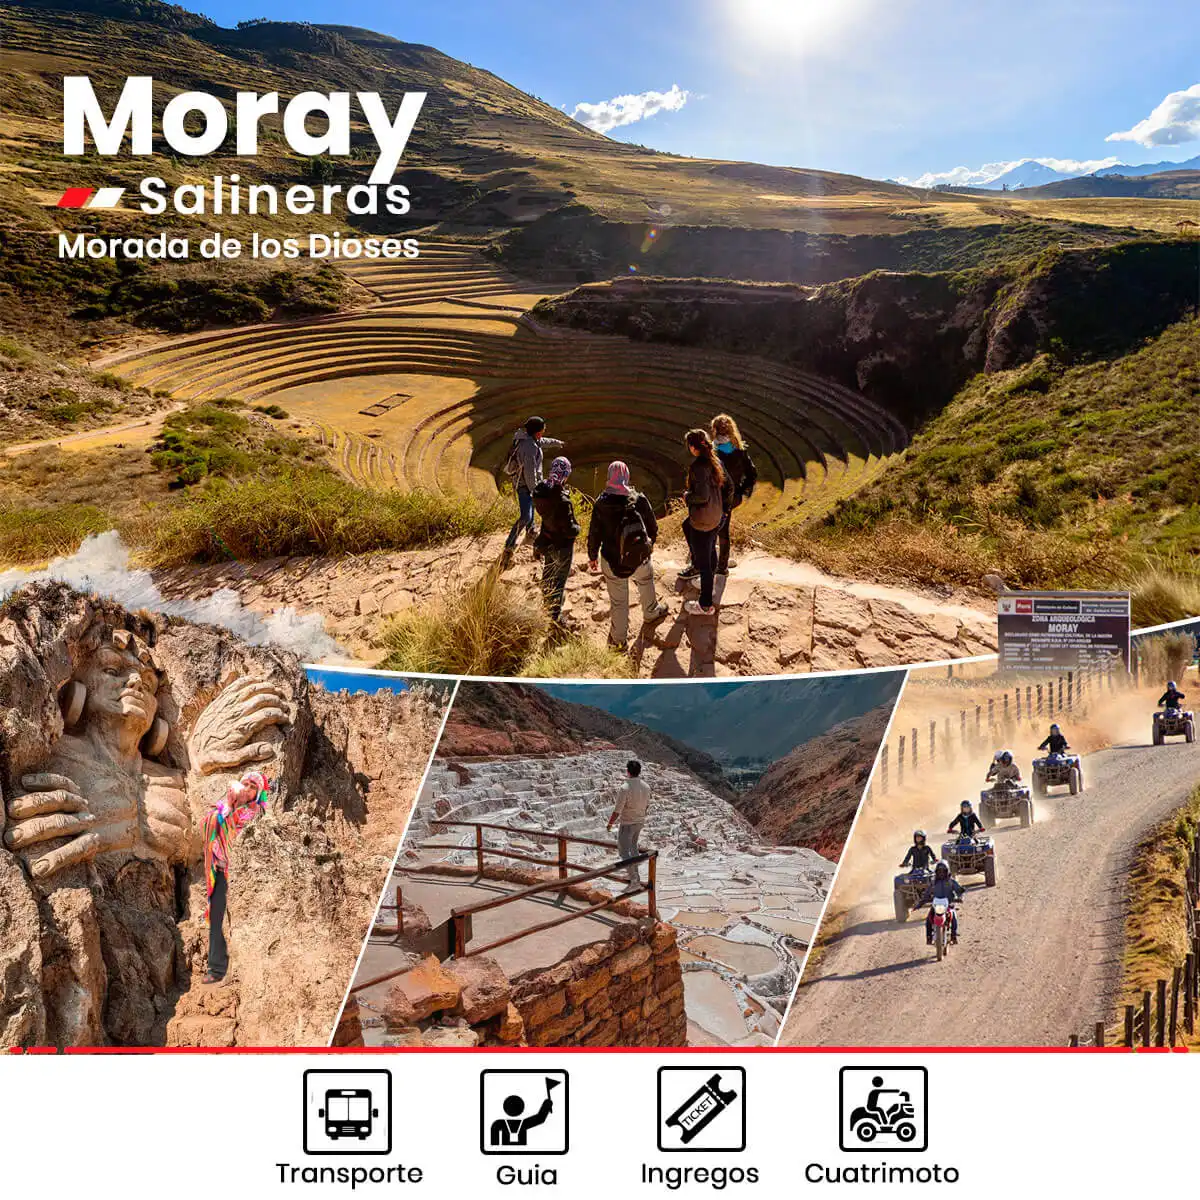 Tour Cuatrimoto Moray y Salineras + morada de los Dioses wa.me/51964265060